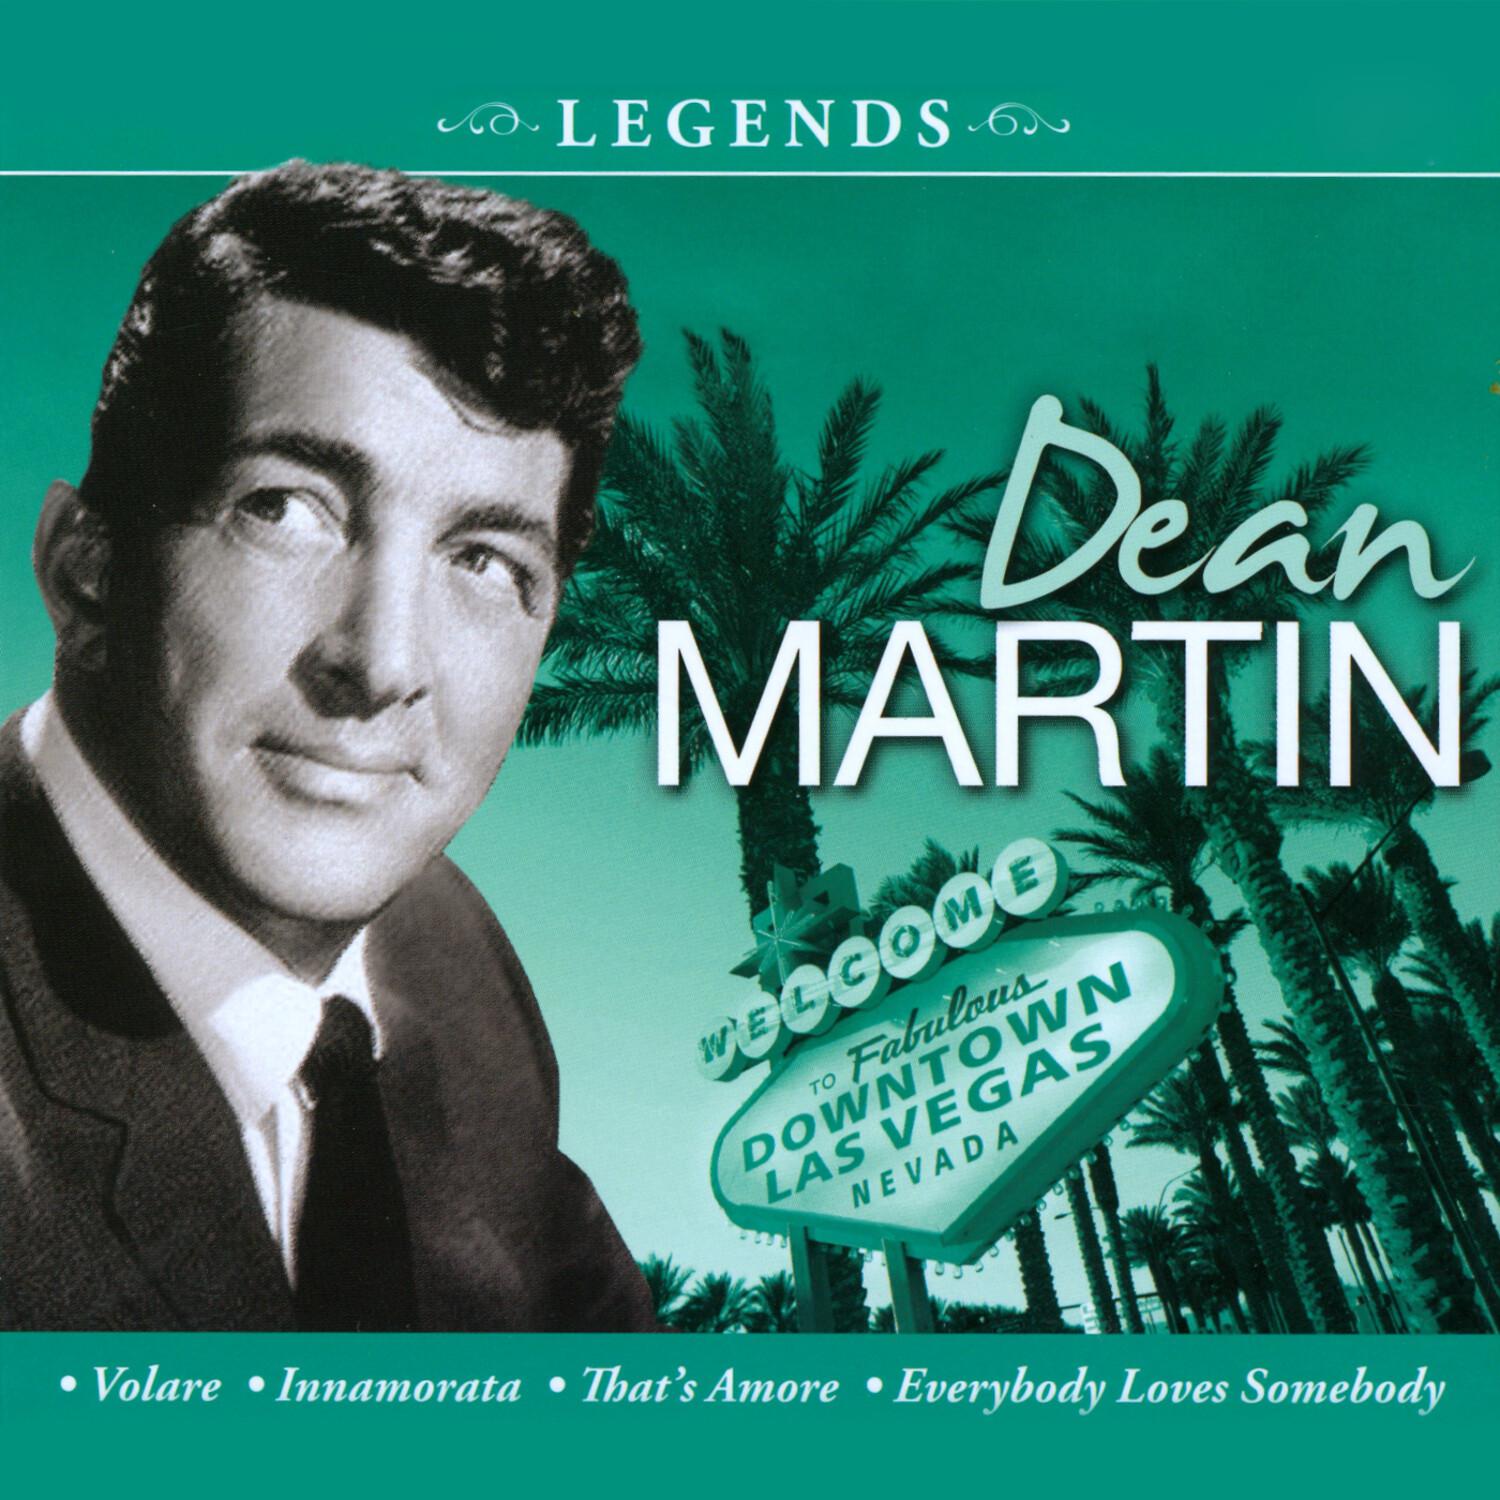 Legends - Dean Martin